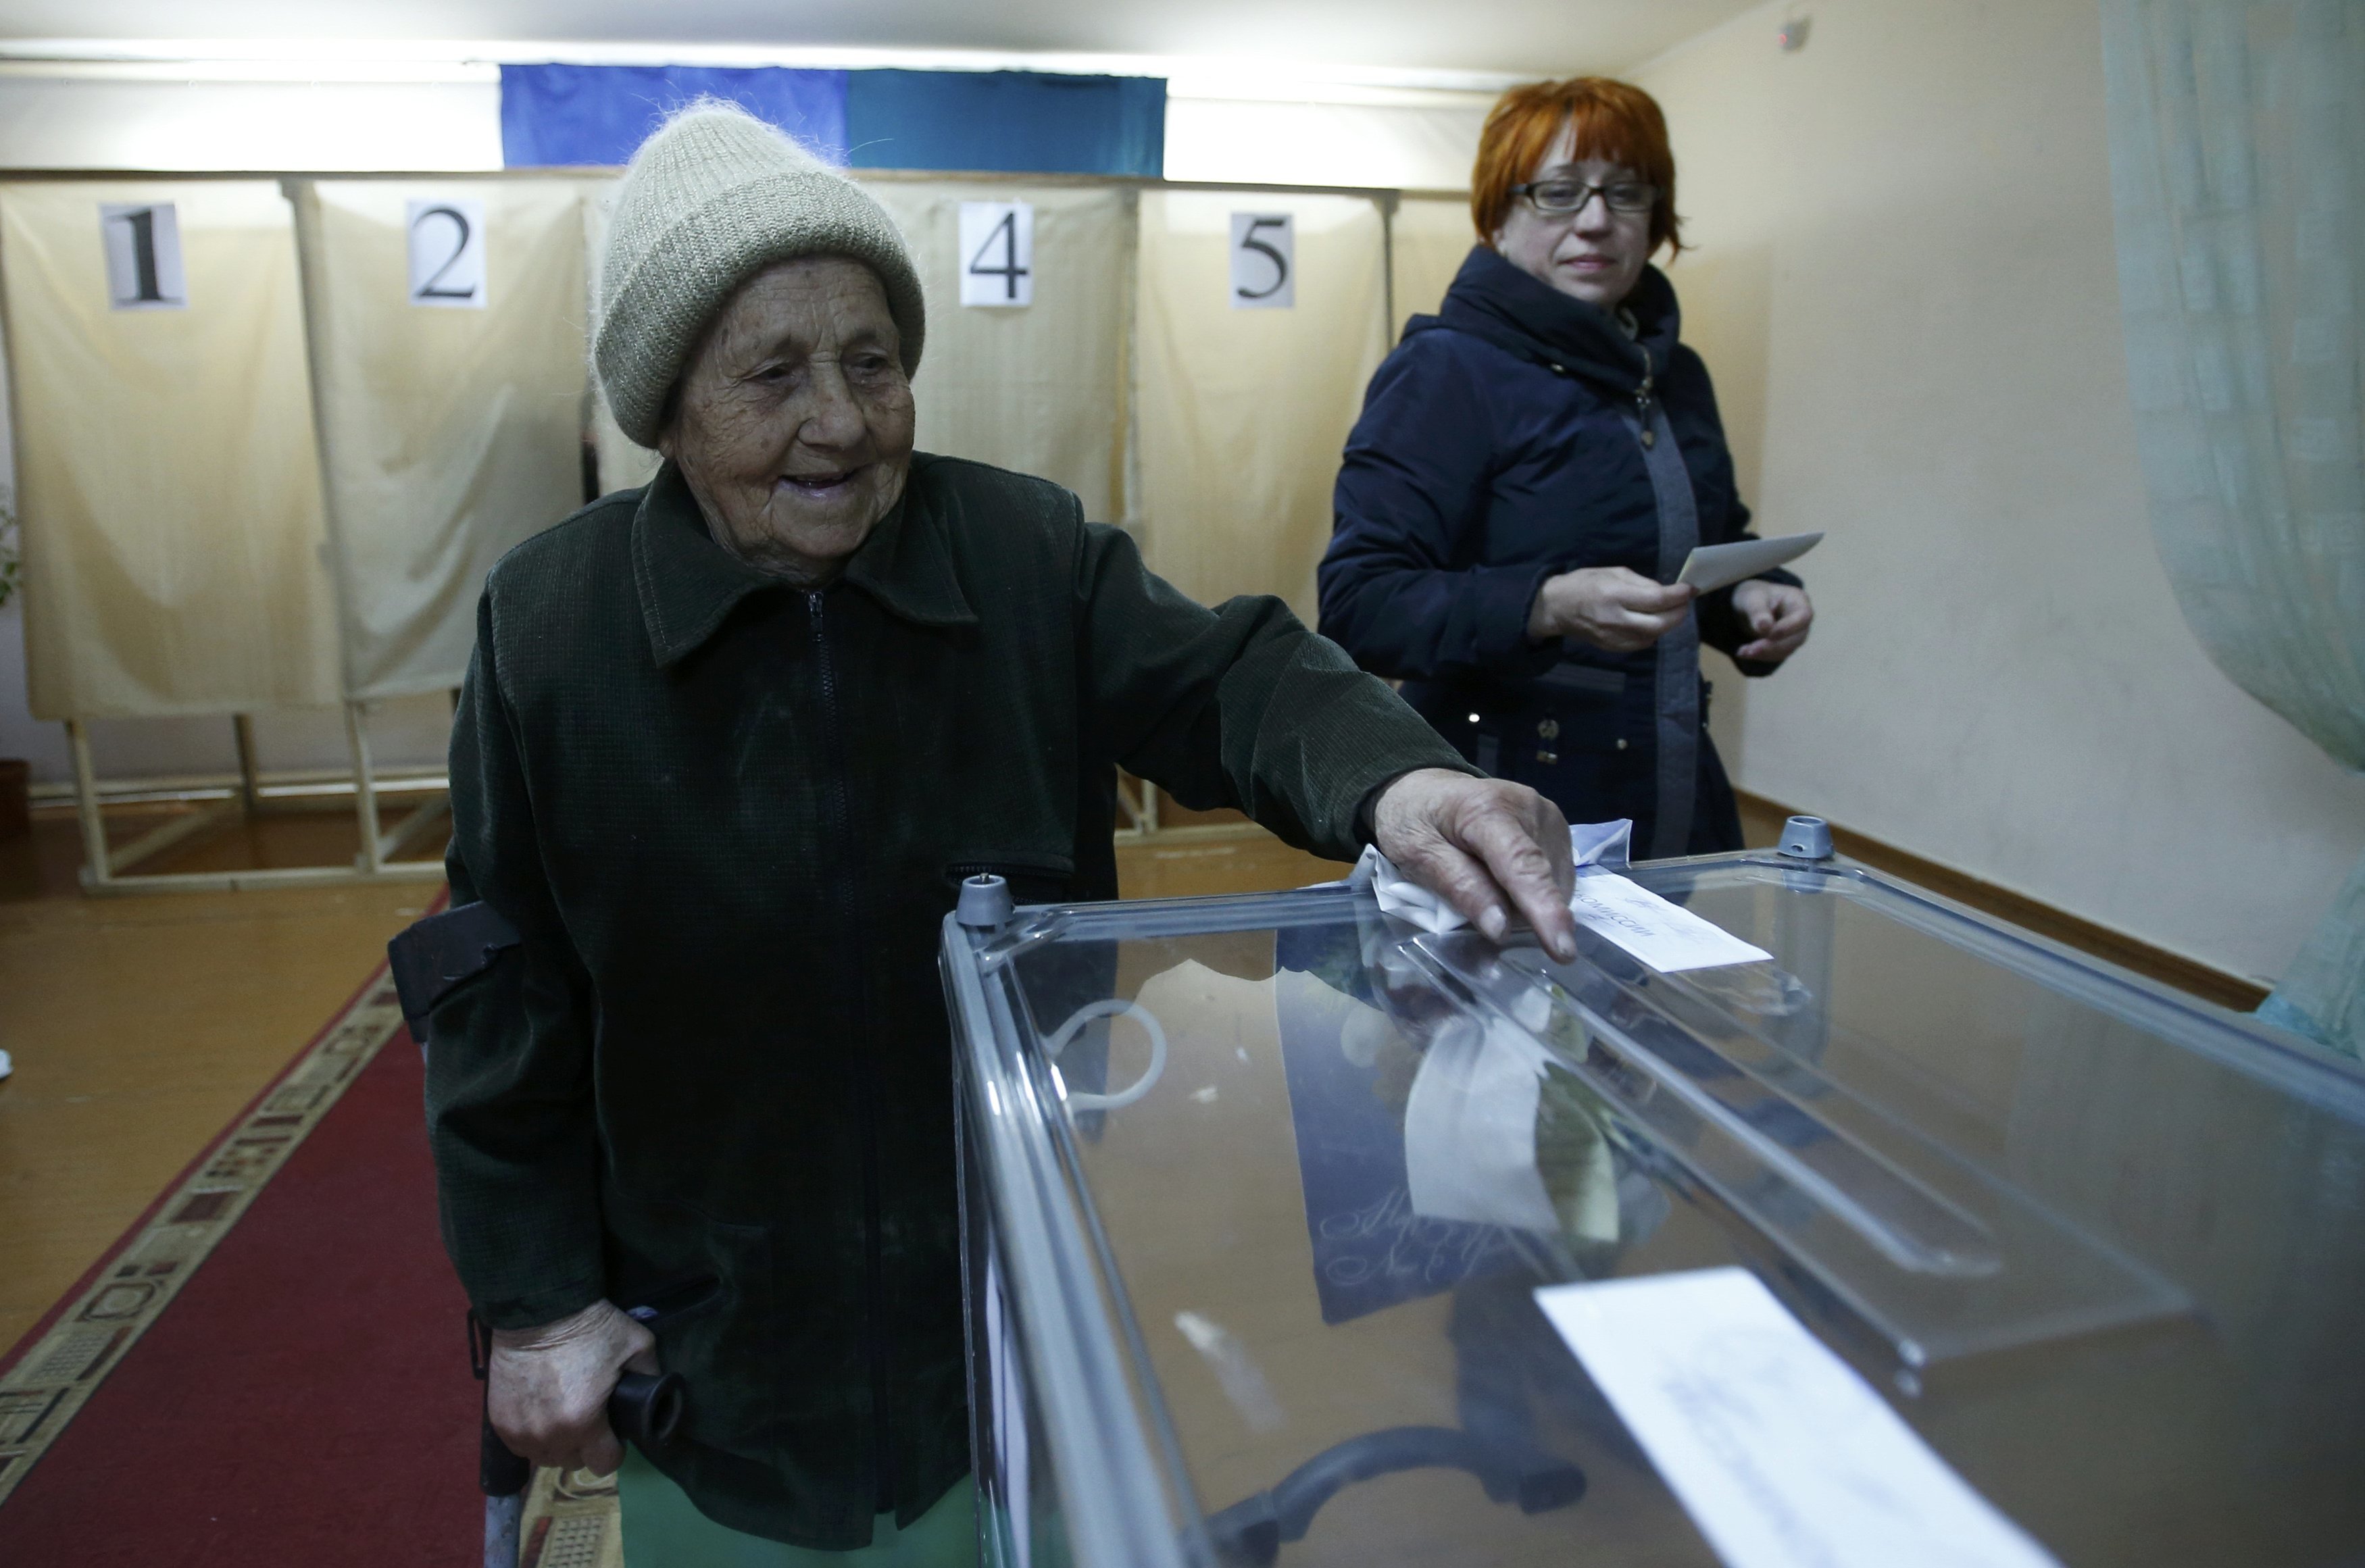 Σε εξέλιξη το δημοψήφισμα που θα κρίνει την ένωση της Κριμαίας με την Ρωσία